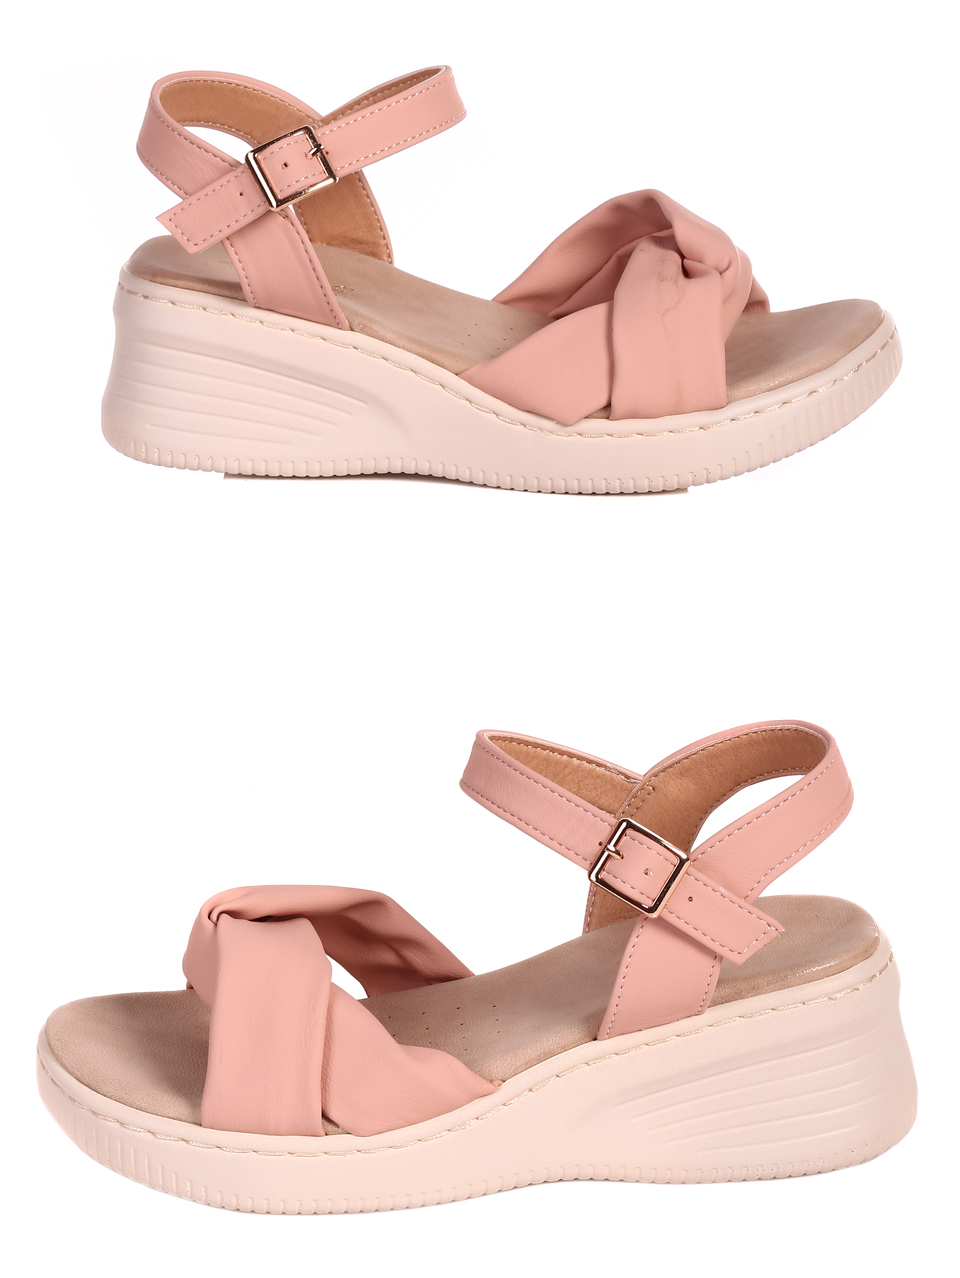 Ежедневни дамски сандали на платформа 4H-22246 pink